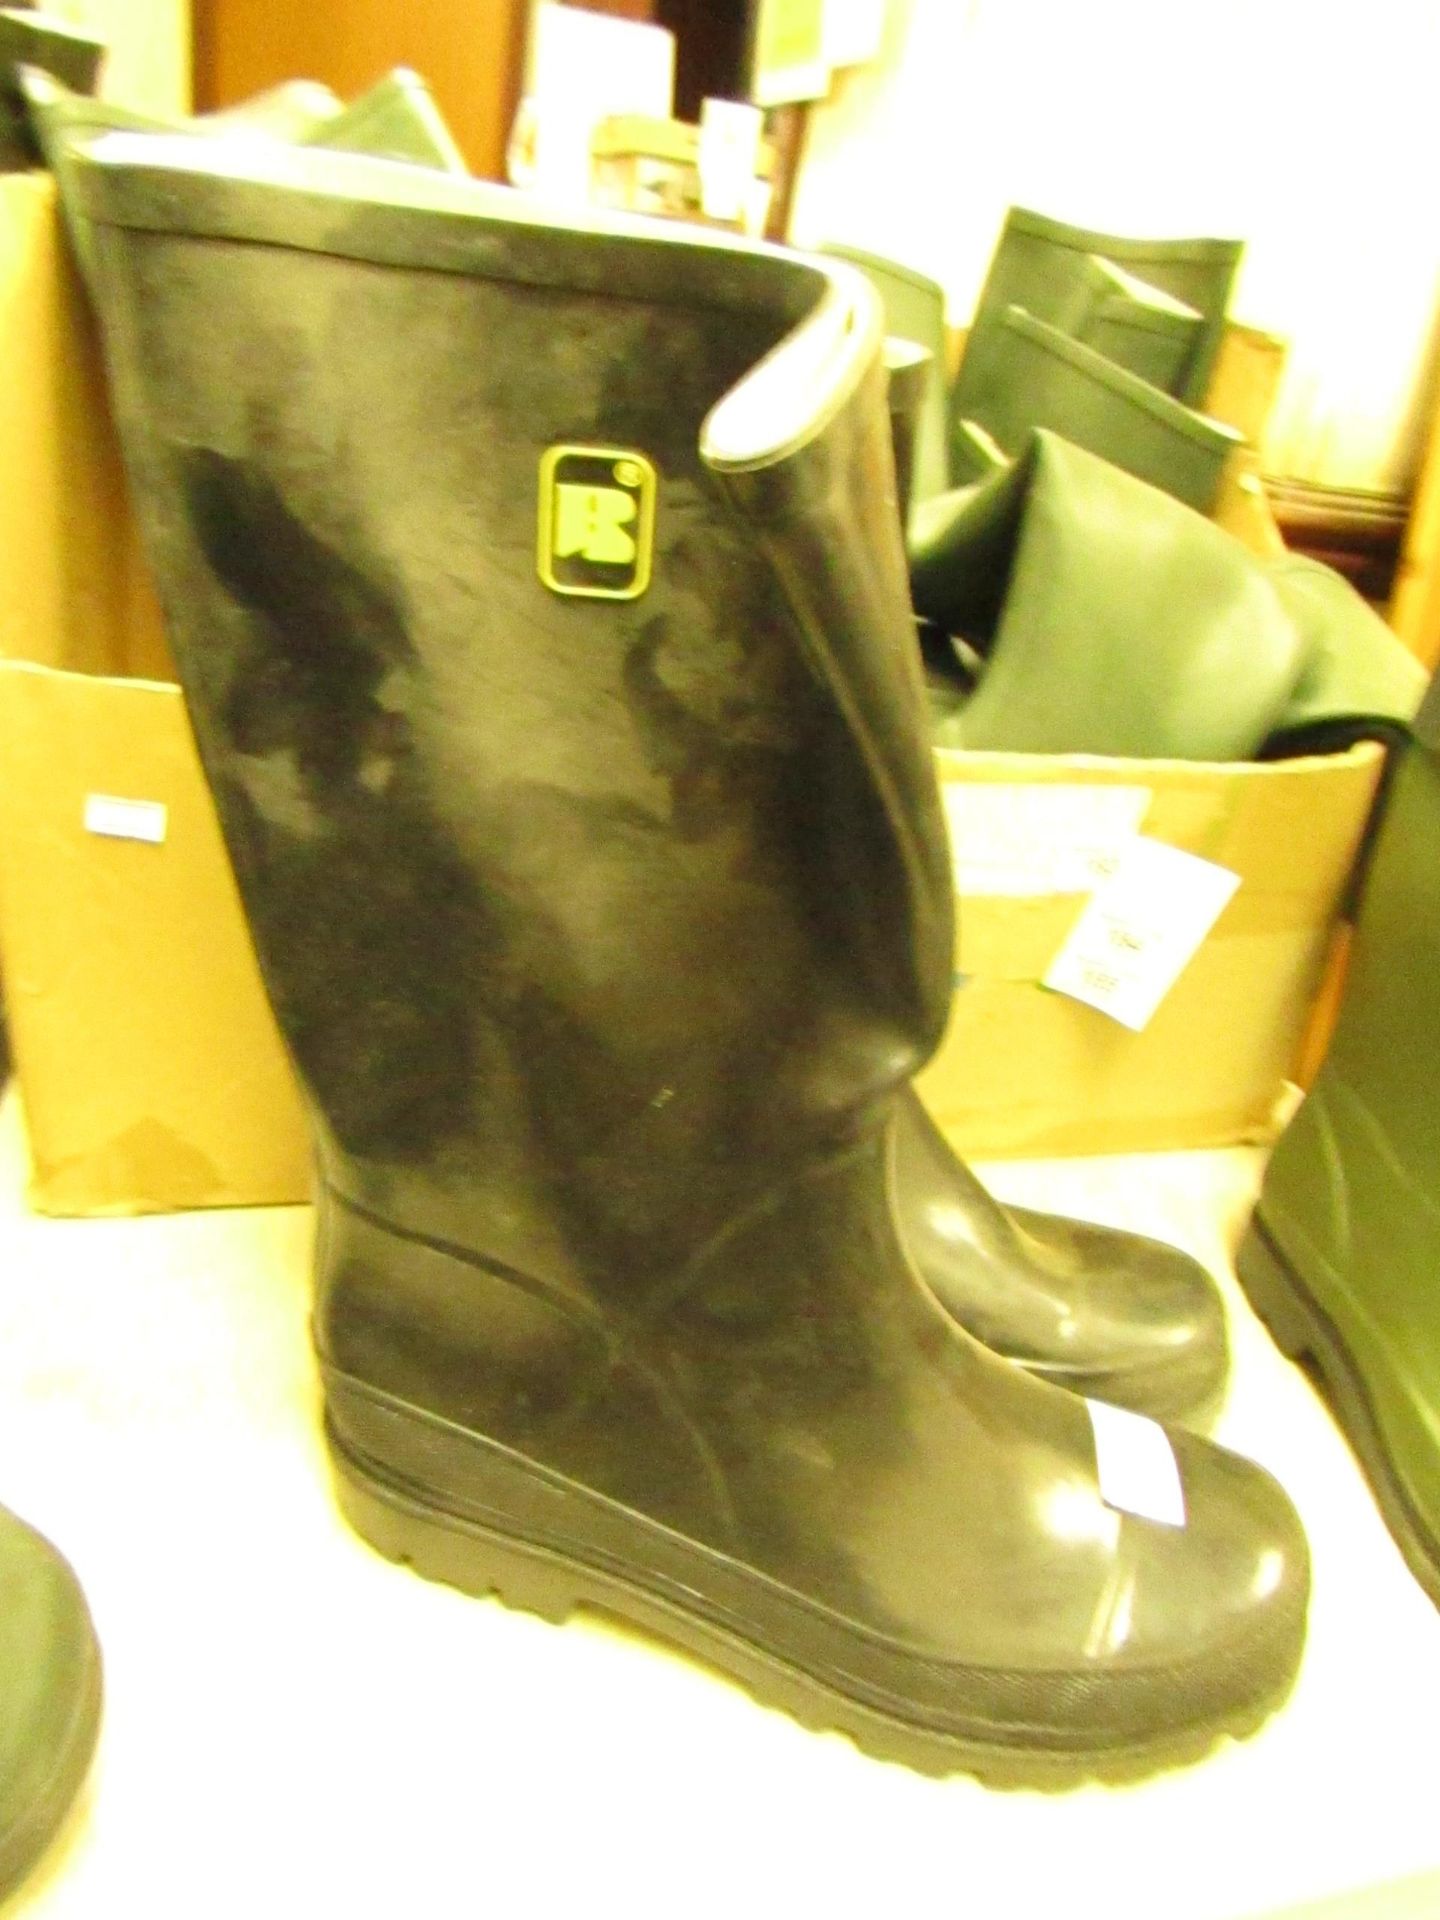 Black Wellington Boots - UK Size 8 - Slightly worn